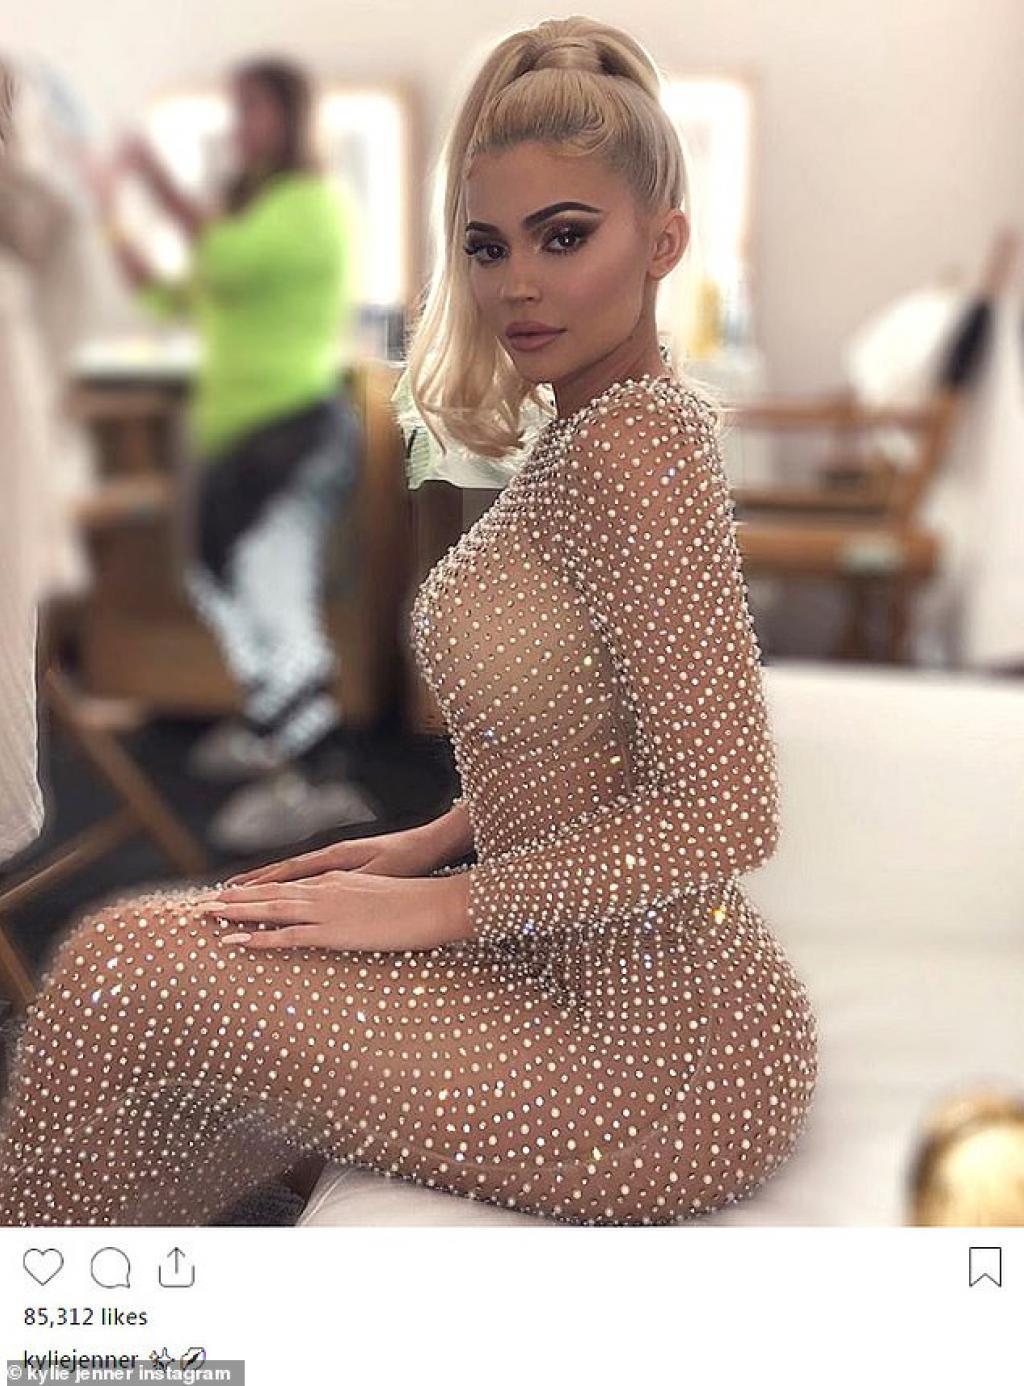 Kylie Jenner s'affiche dans une robe transparente sur Instagram